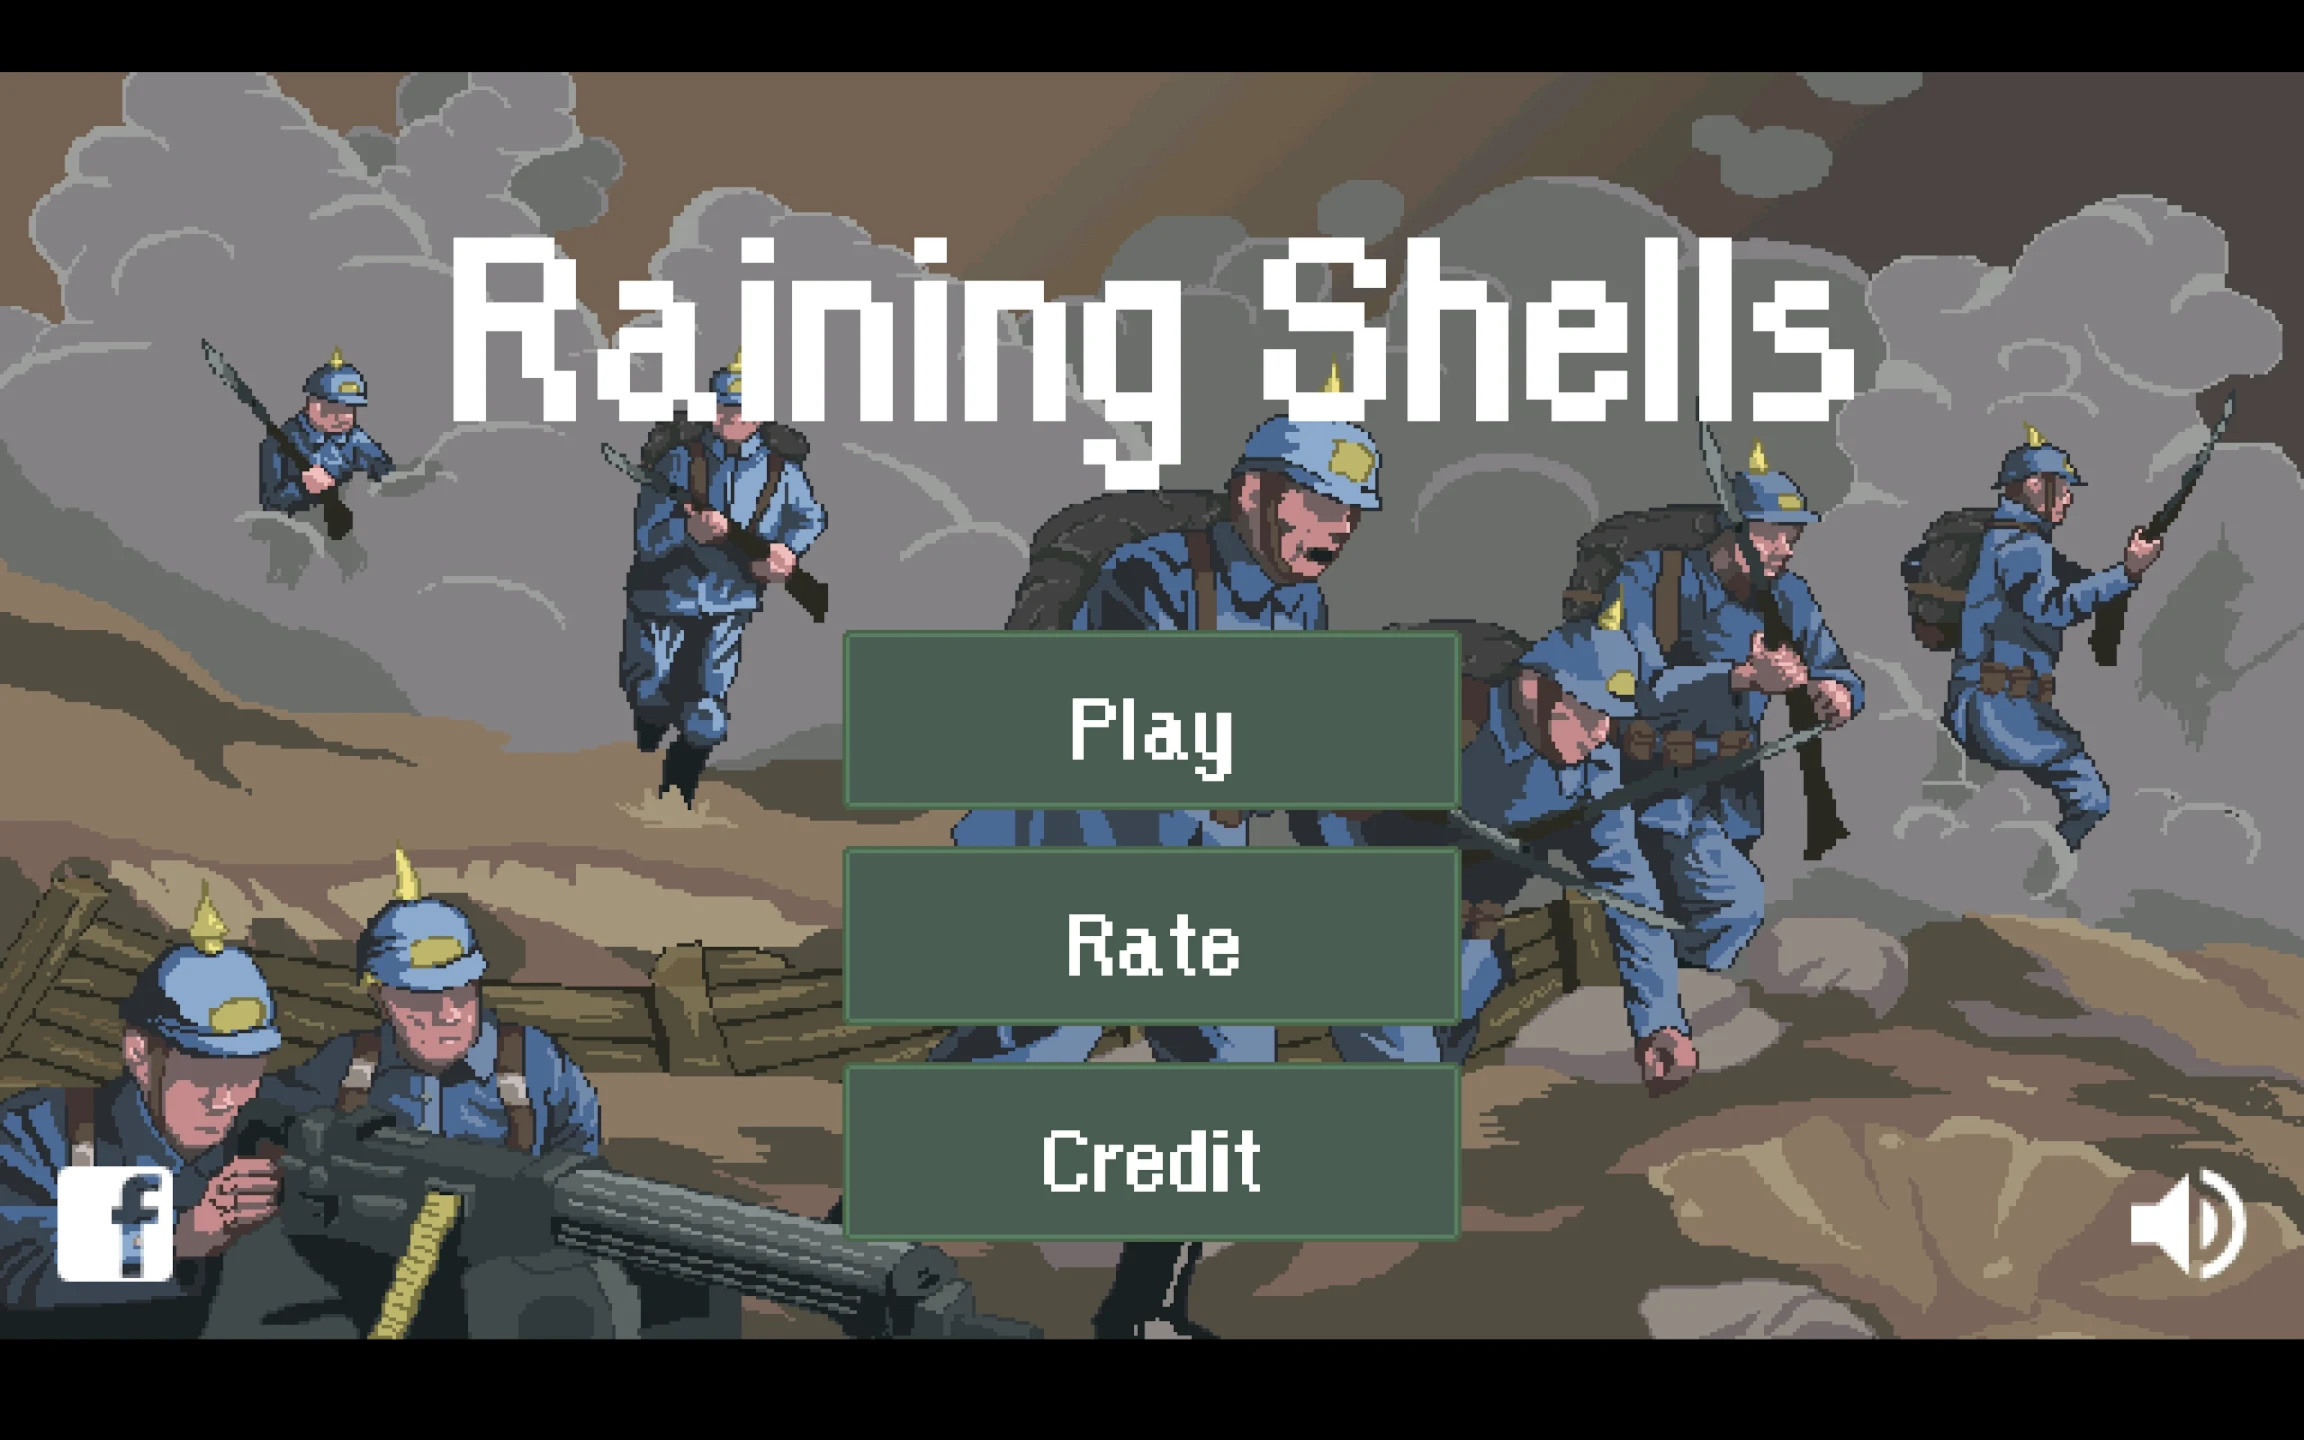 Raining Shells